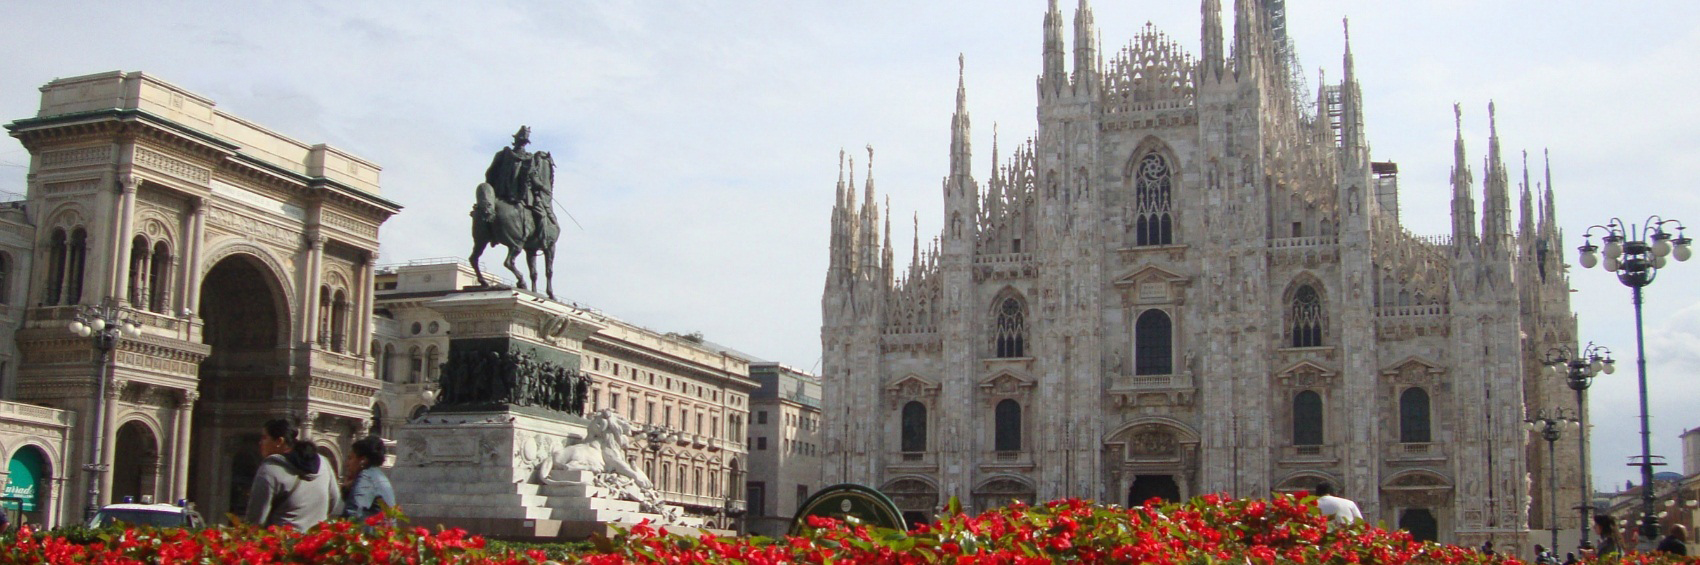 "Piazza Duomo" - immagine originale di Irene Grassi from Italy, immagine derivata a cura di Lkcl it.